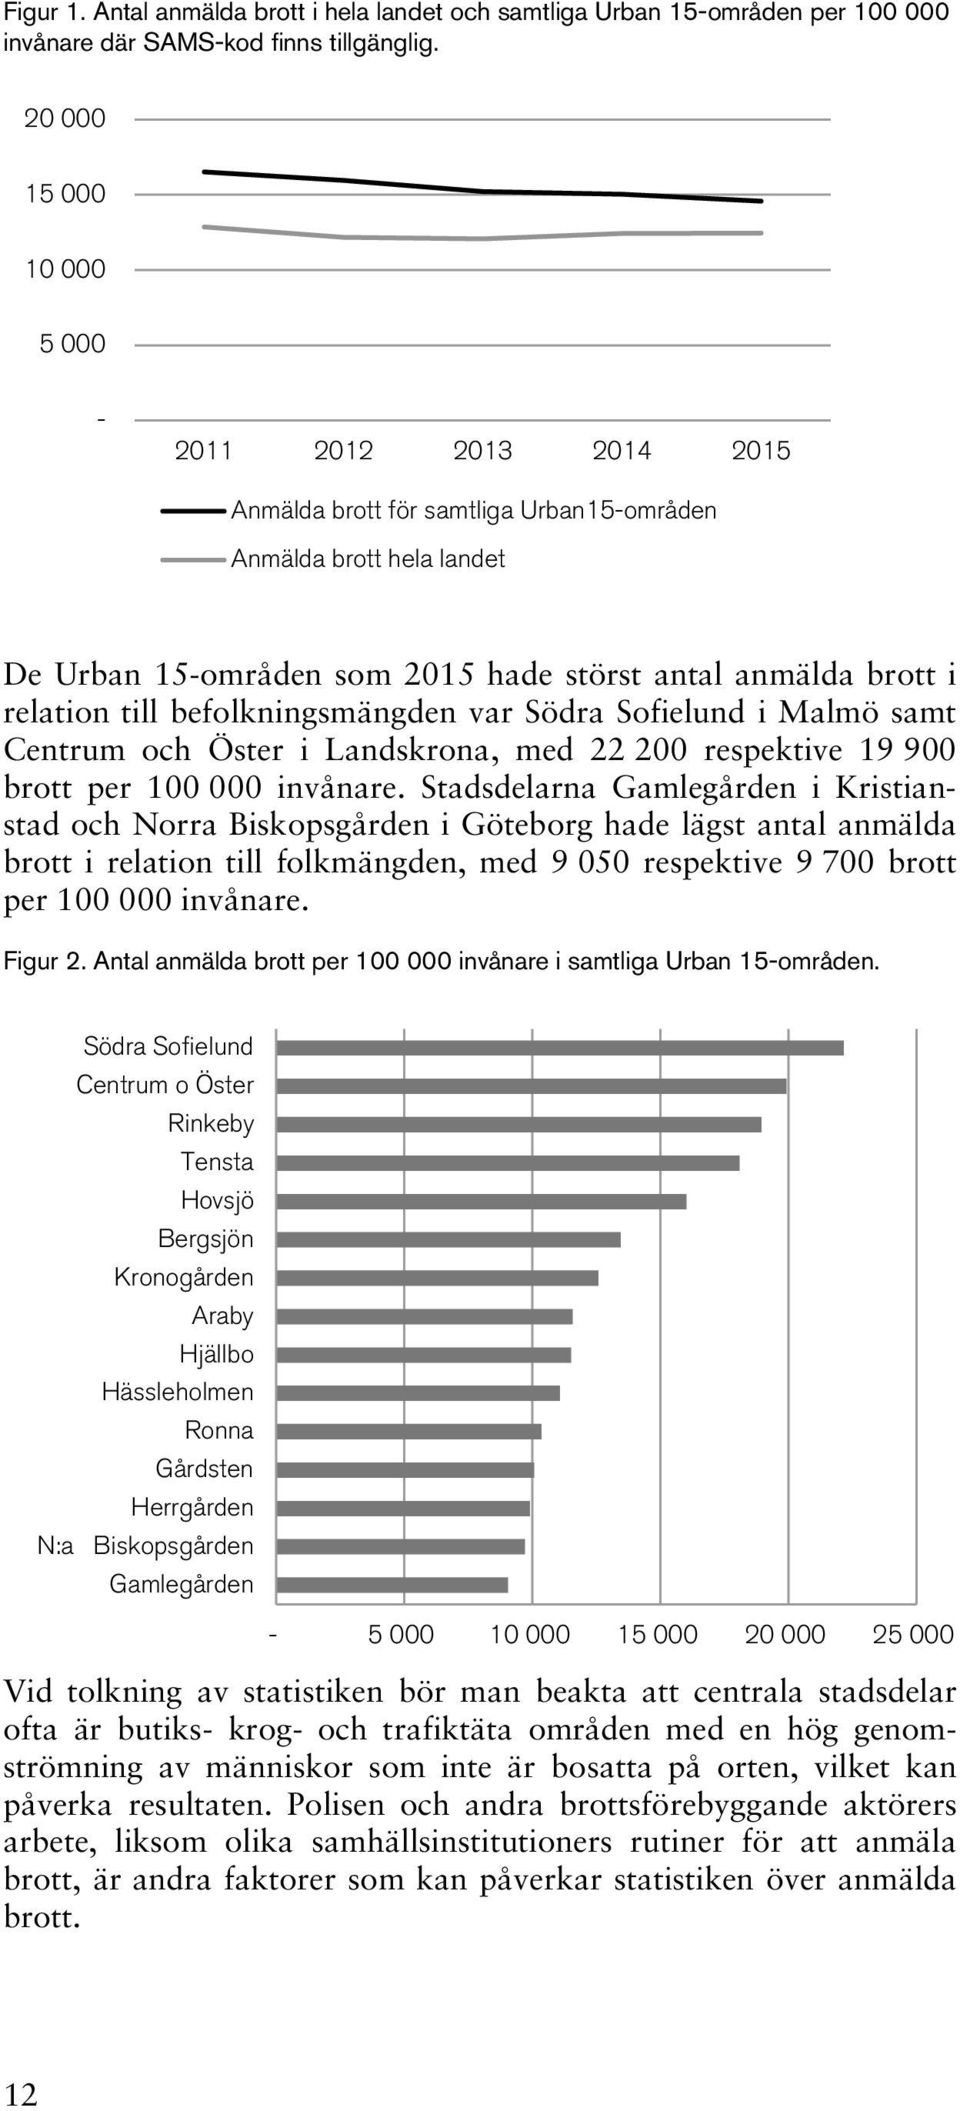 befolkningsmängden var Södra Sofielund i Malmö samt Centrum och Öster i Landskrona, med 22 200 respektive 19 900 brott per 100 000 invånare.